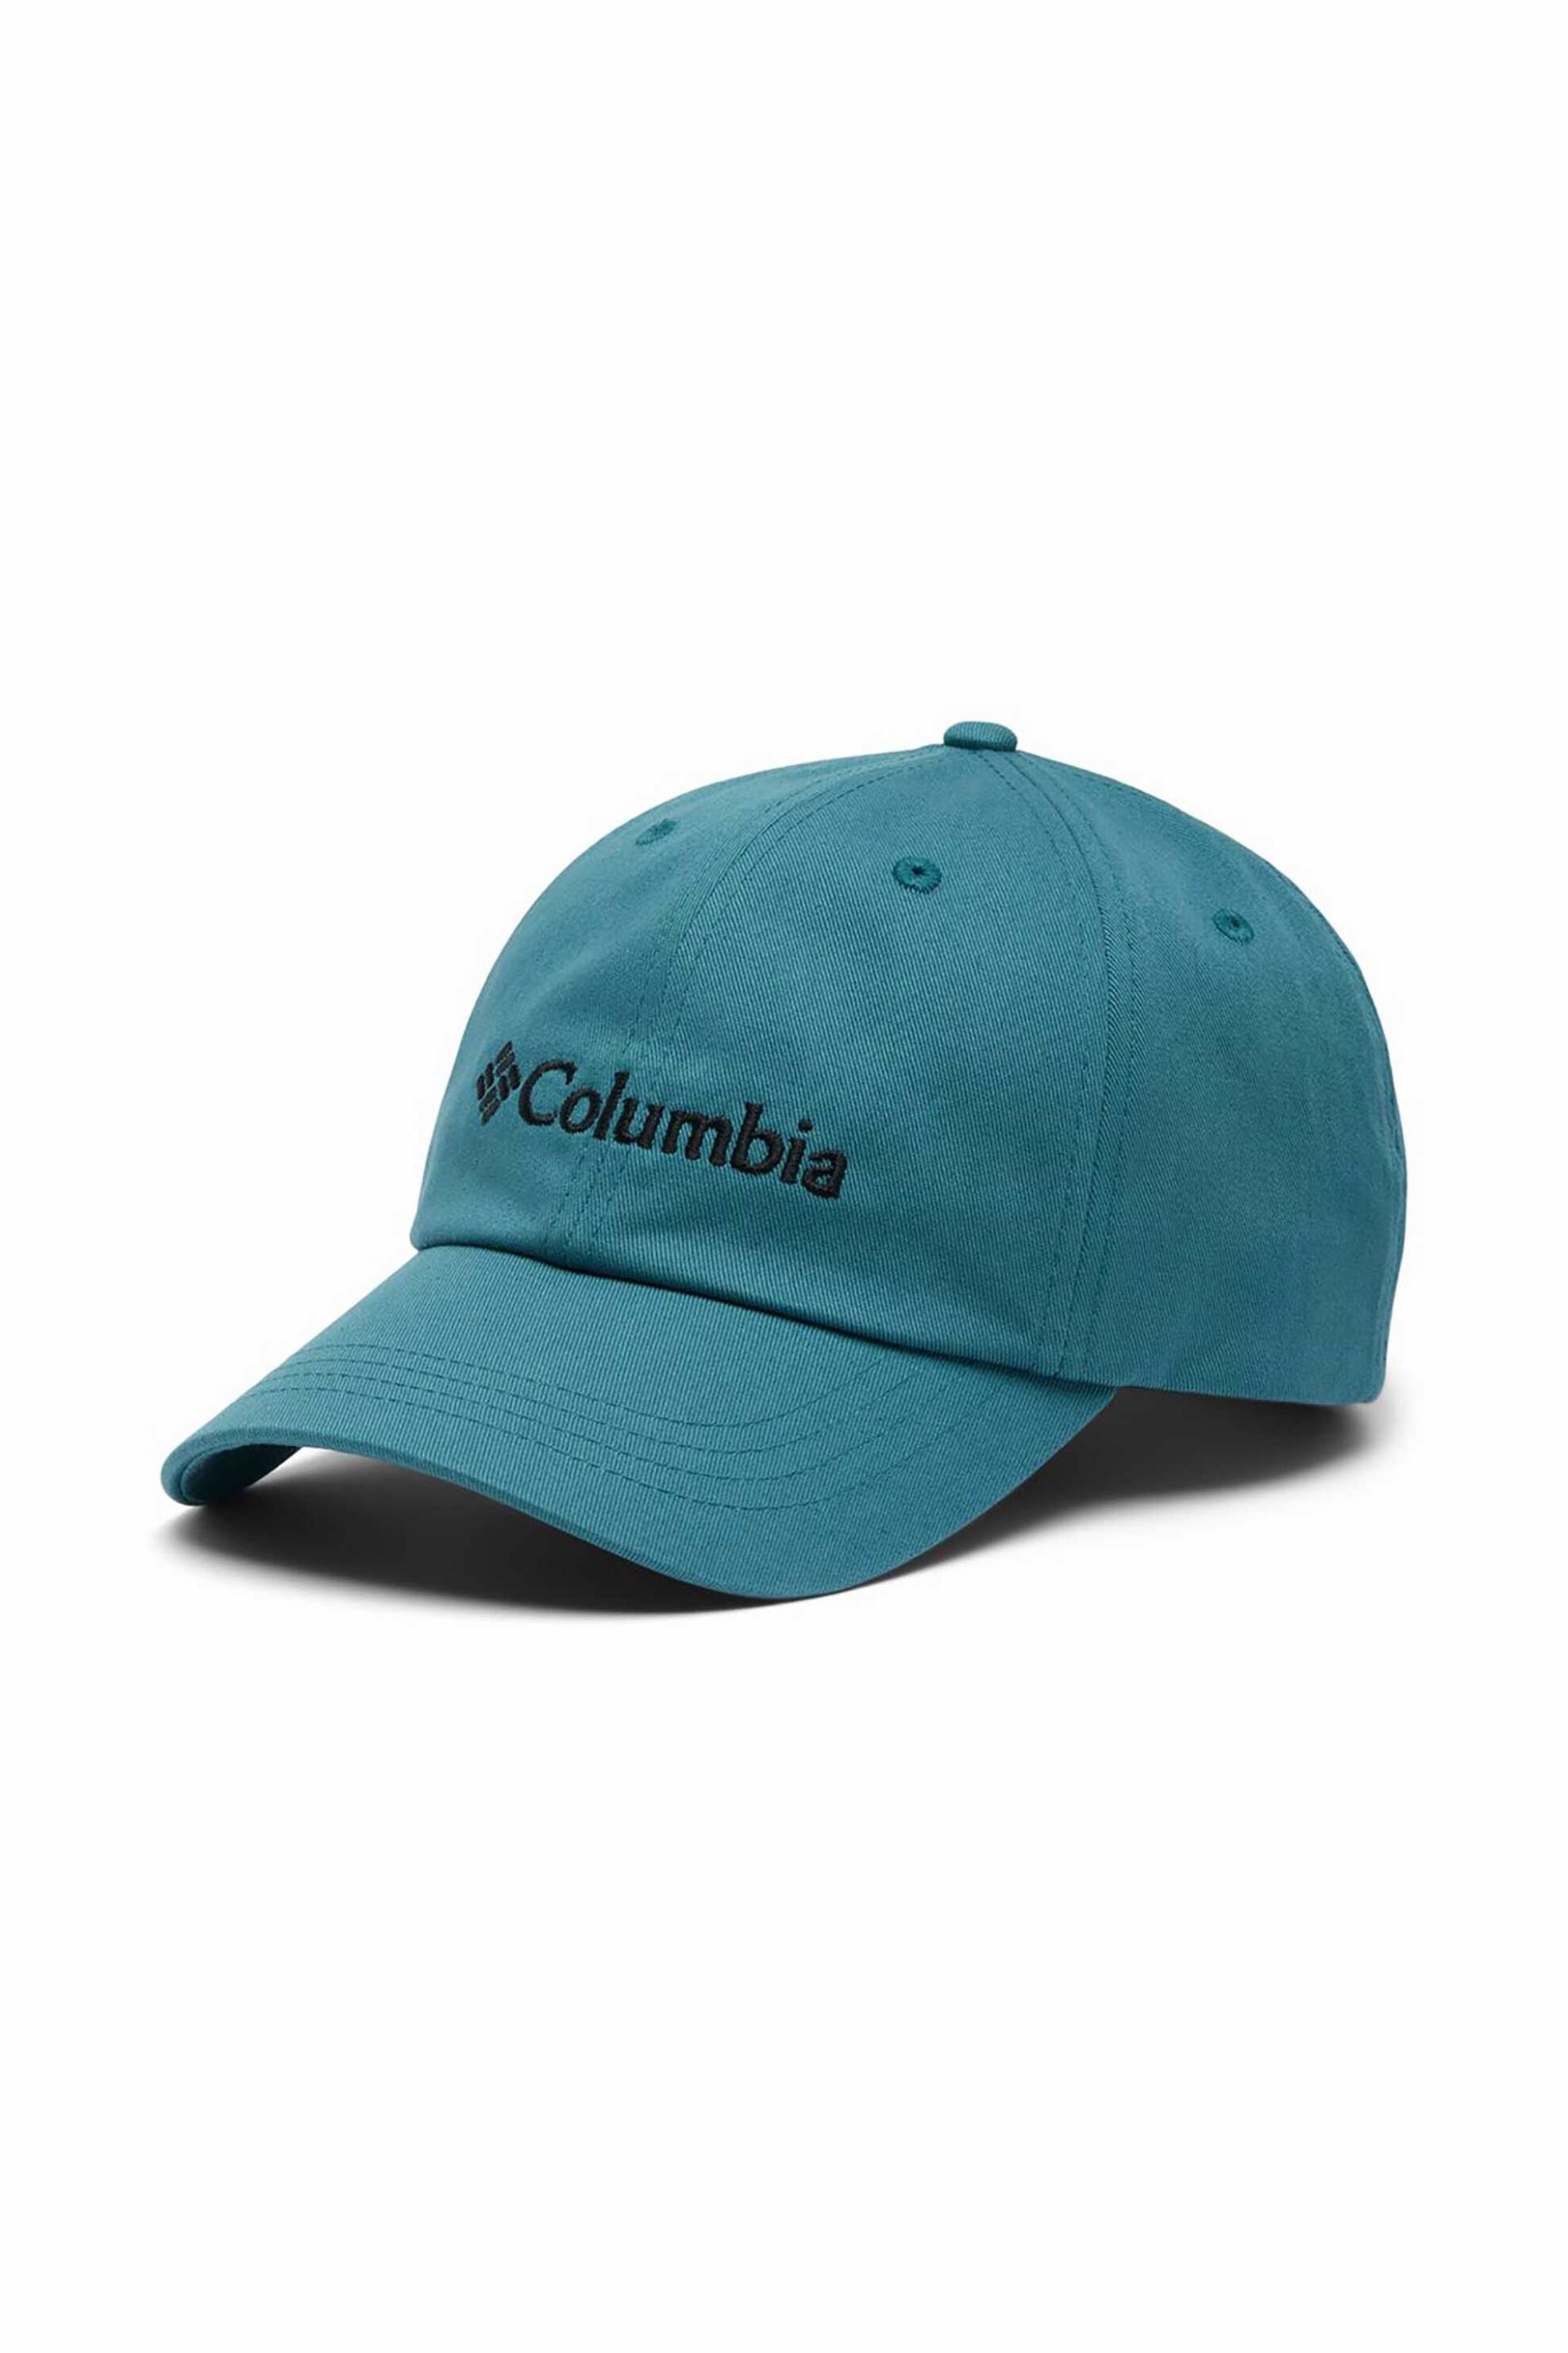 Ανδρική Μόδα > Ανδρικά Αξεσουάρ > Ανδρικά Καπέλα & Σκούφοι Columbia unisex καπέλο μονόχρωμο με κεντημένο λογότυπο "Roc™ II" - CU0019336TEM Πετρόλ